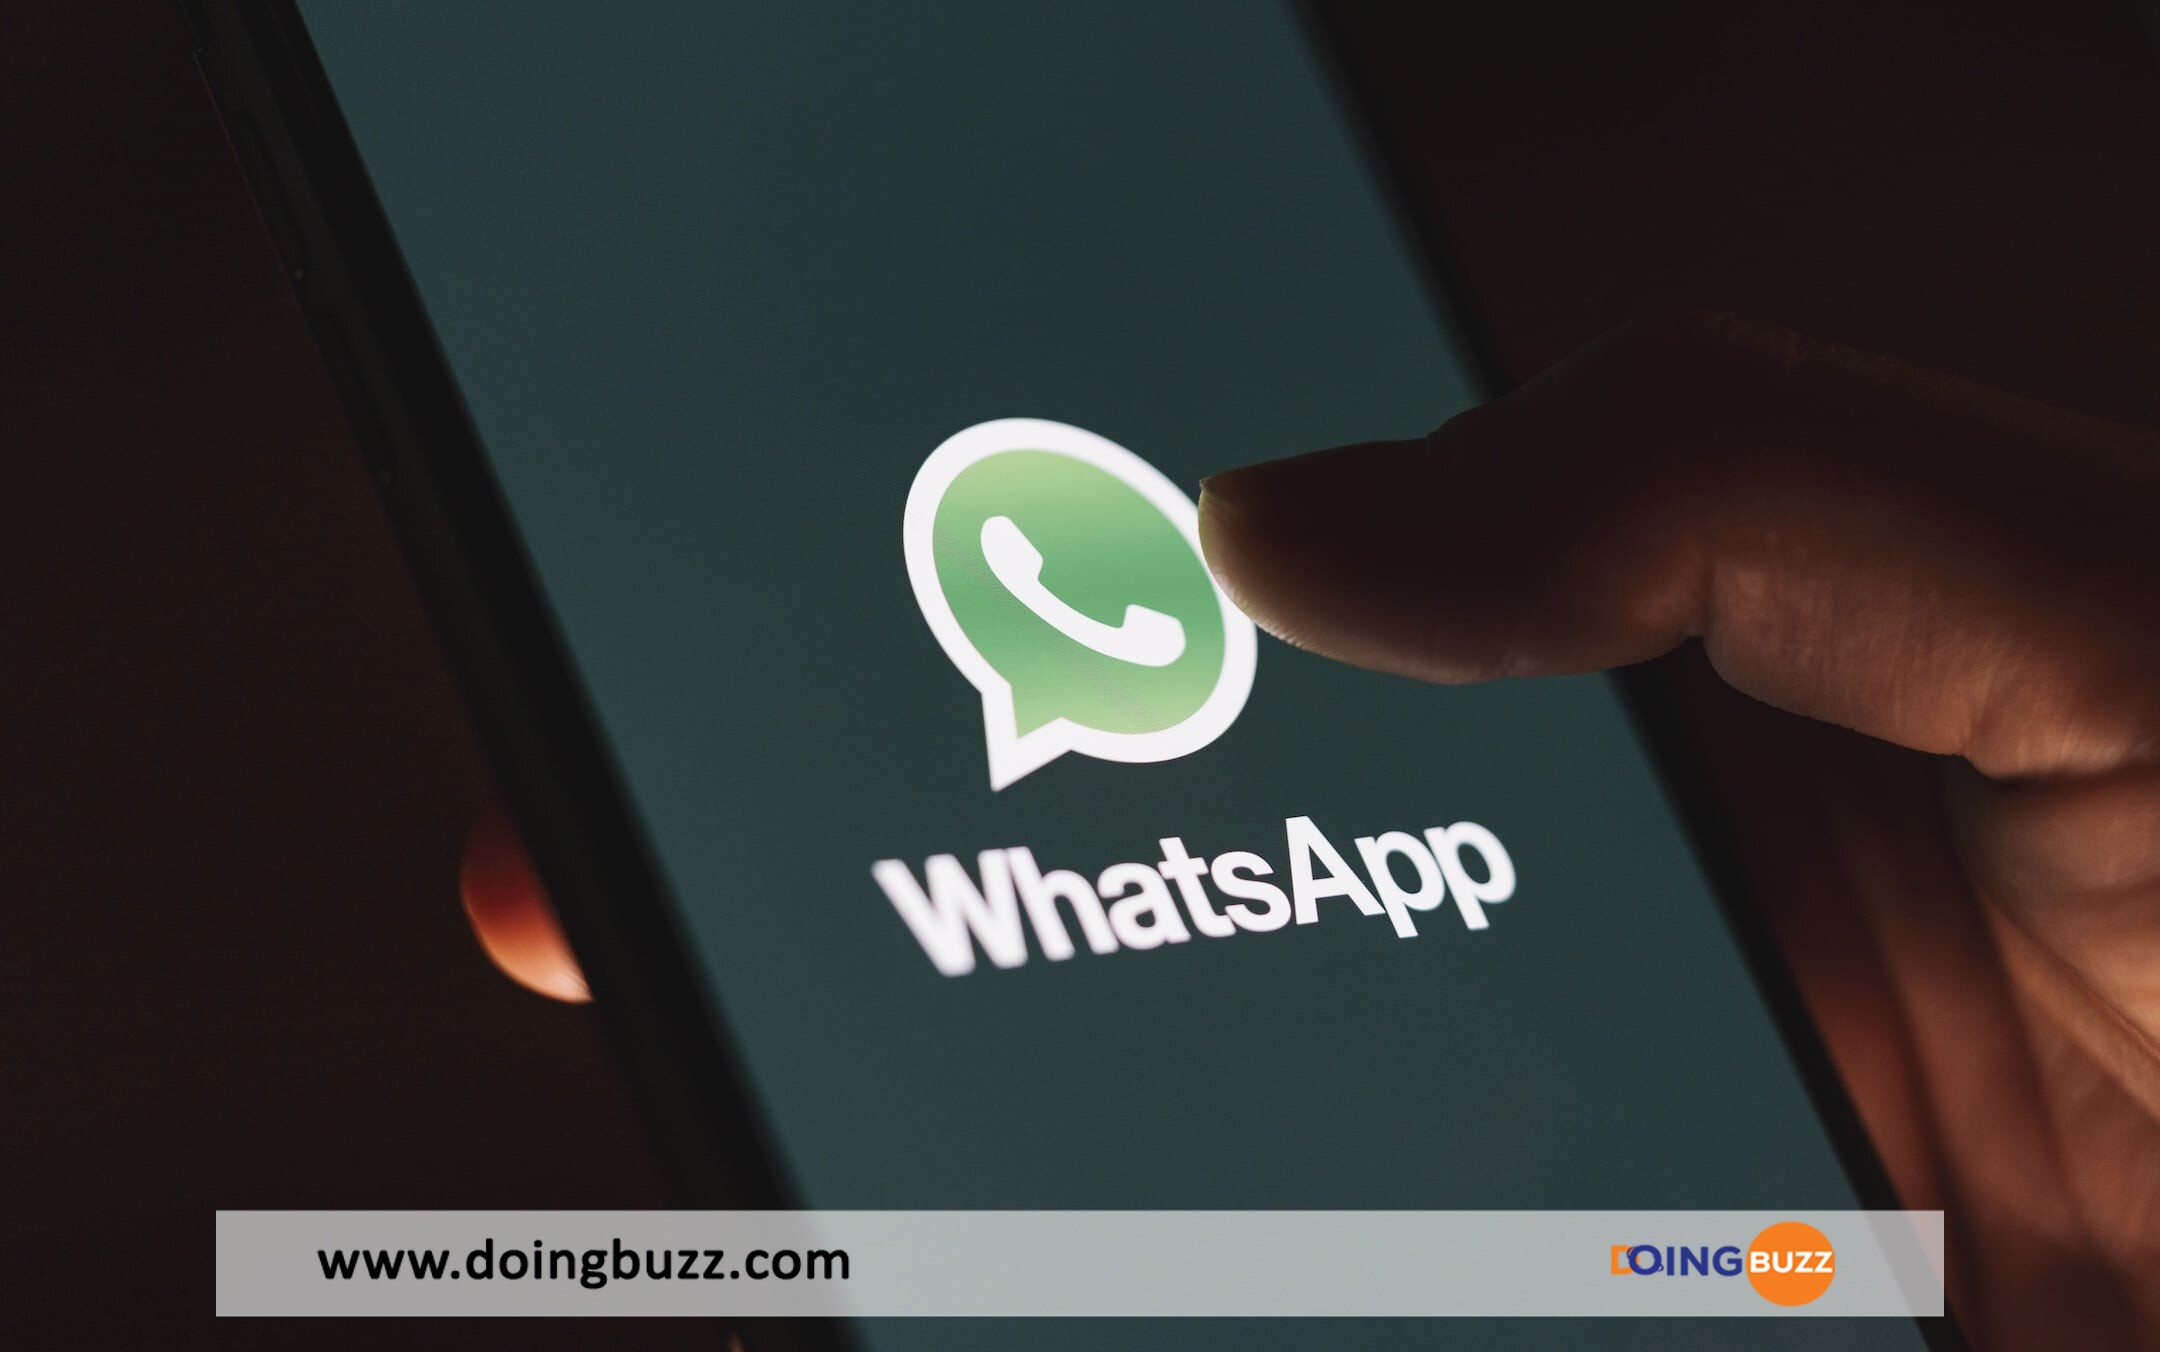 Whatsapp Mdp Doingbuzz